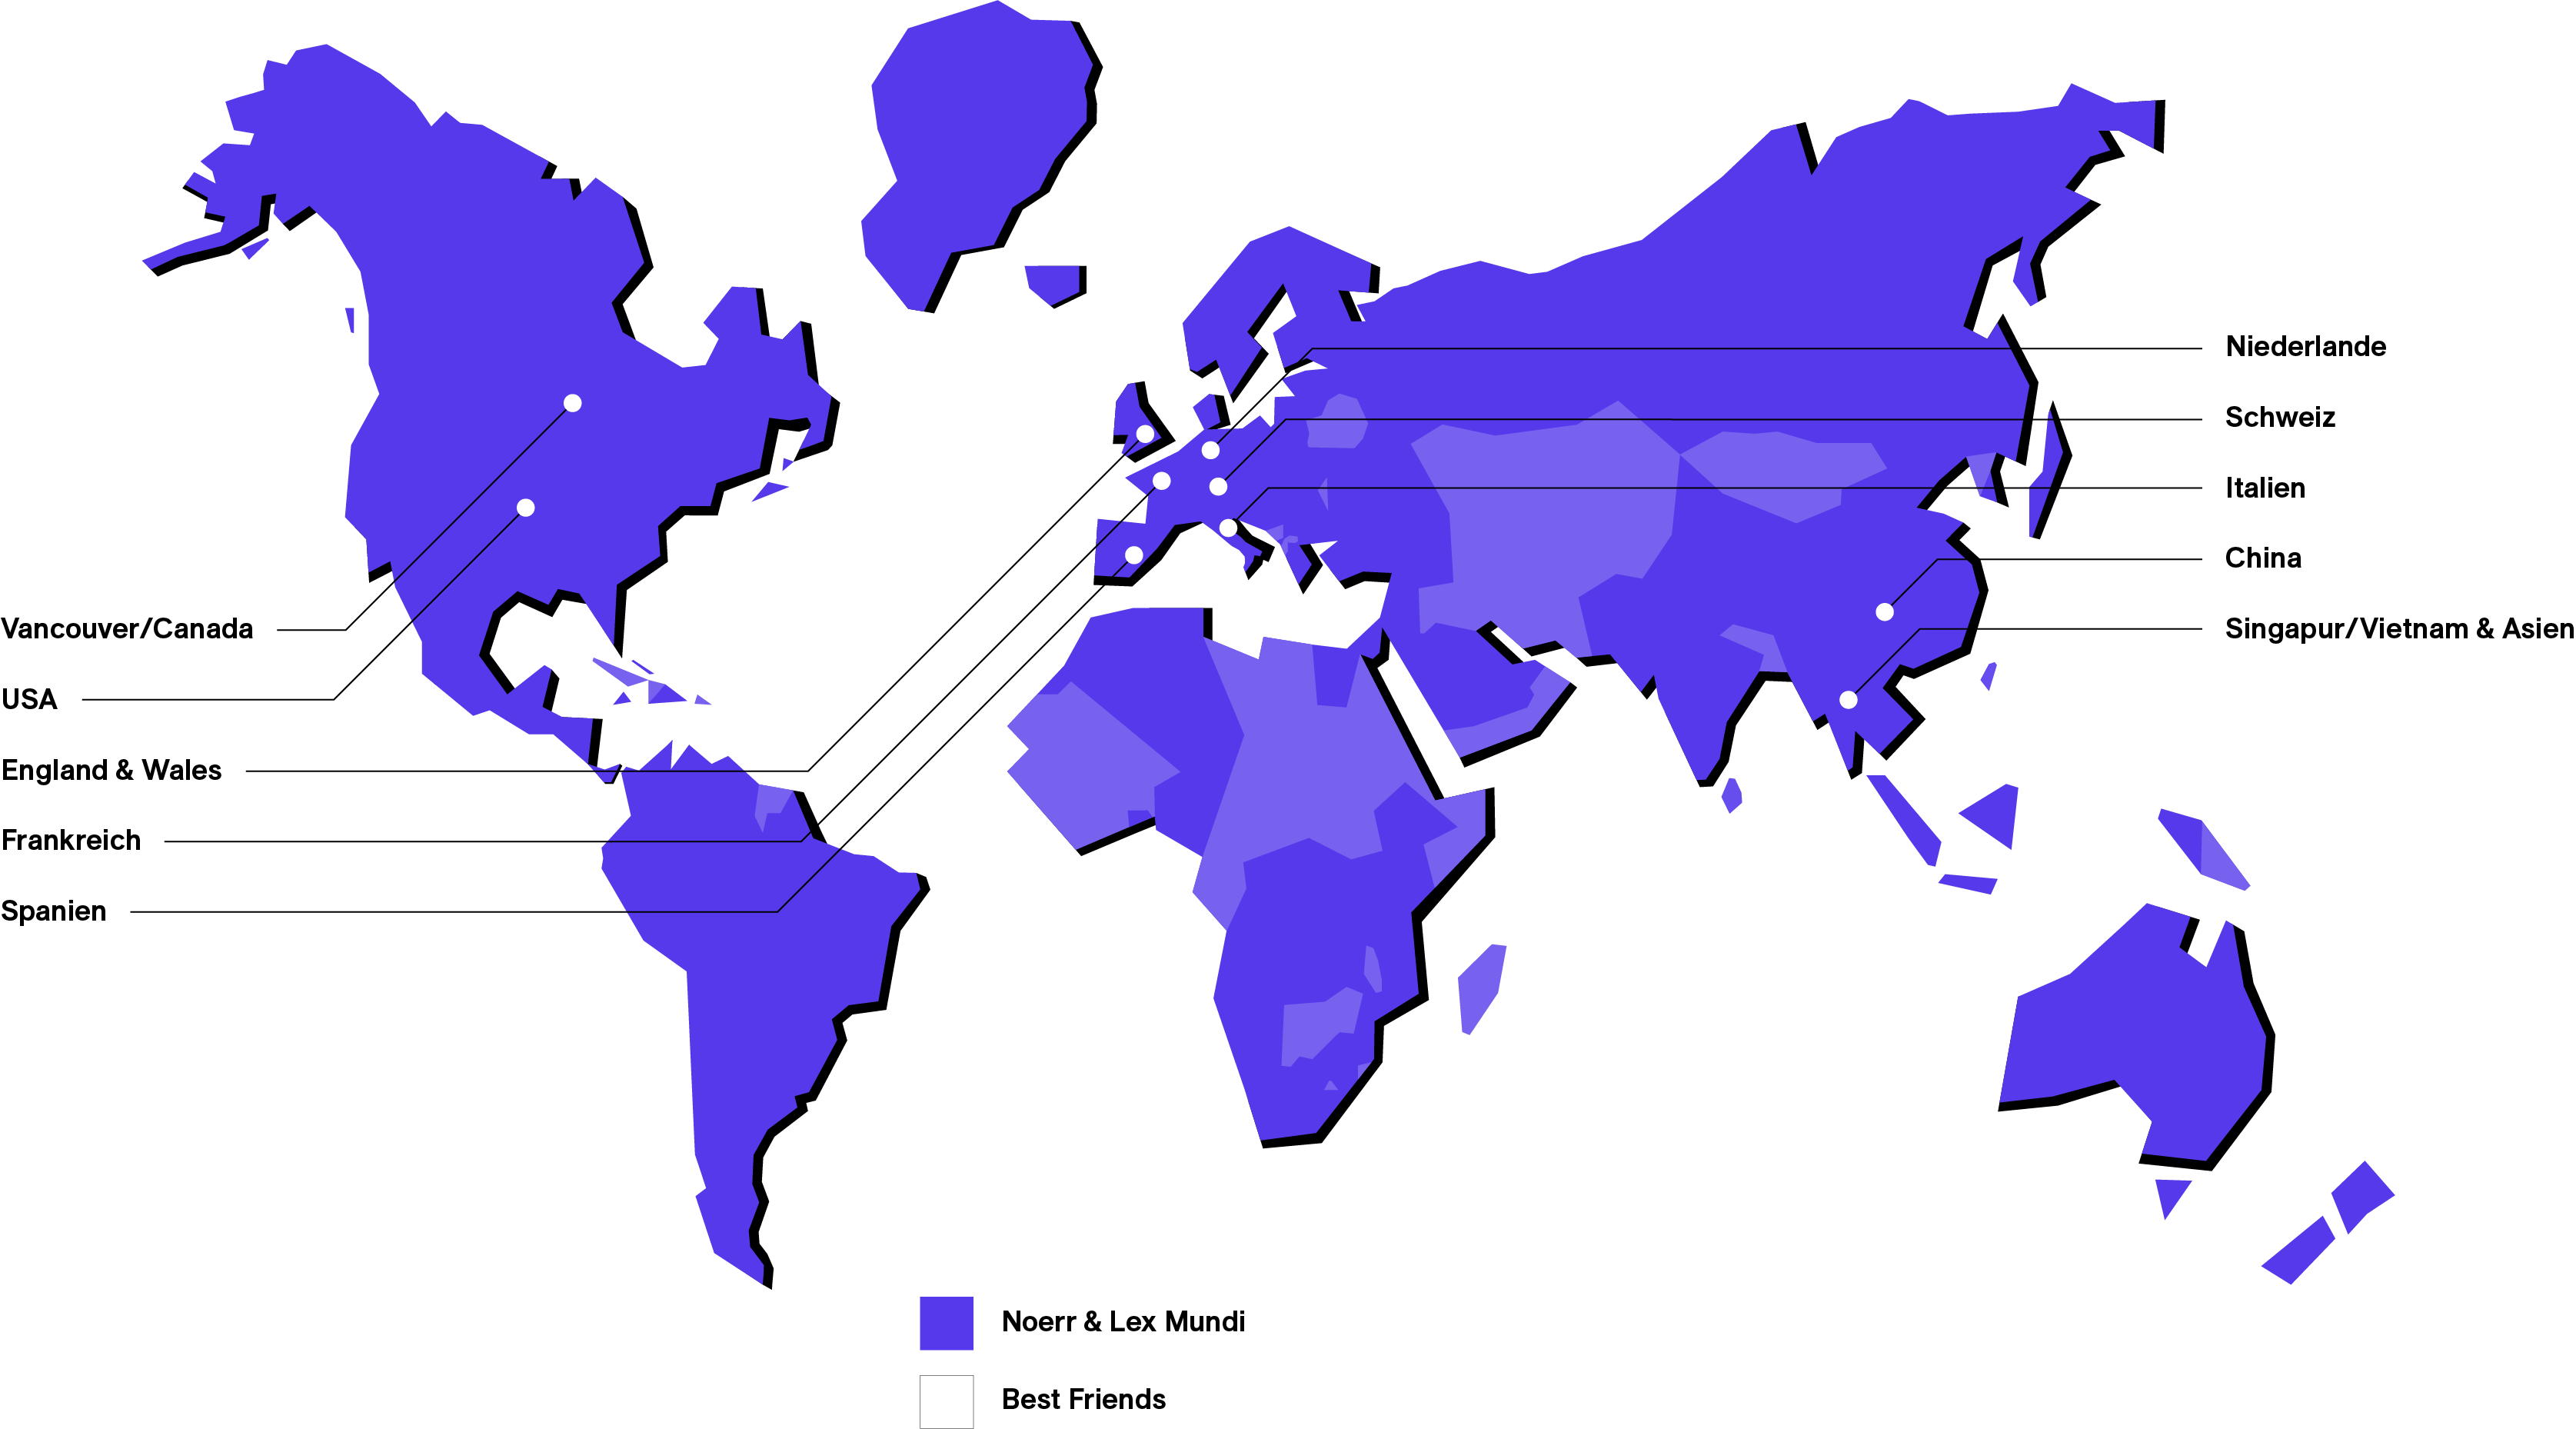 Grafik Weltkarte